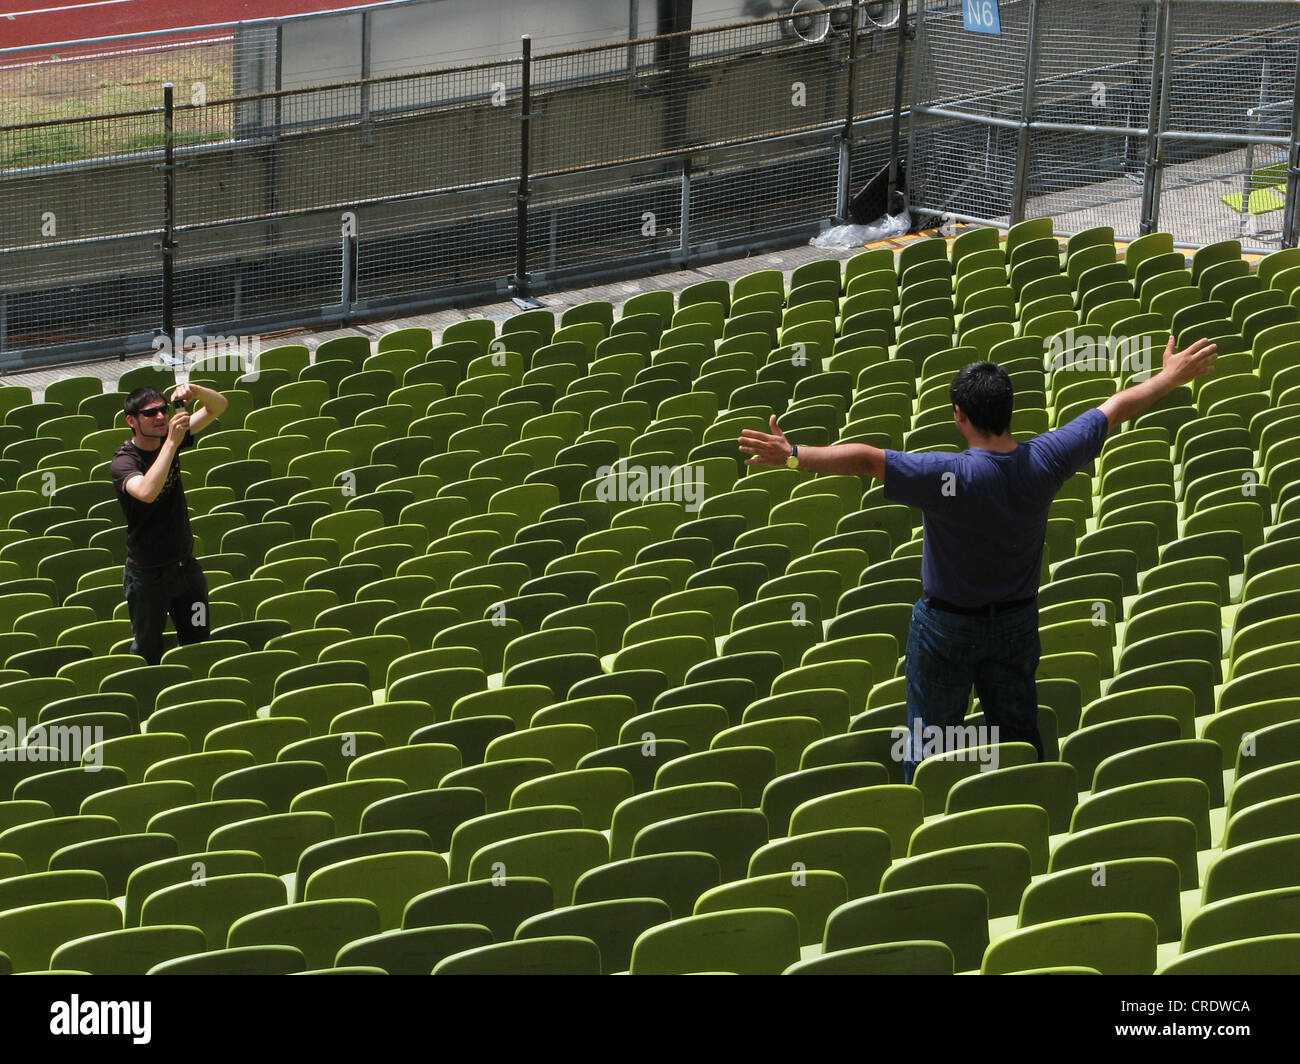 Stade olympique de Munich, l'homme est photographiée entre les sièges, l'Allemagne, Bavaria, Munich Banque D'Images